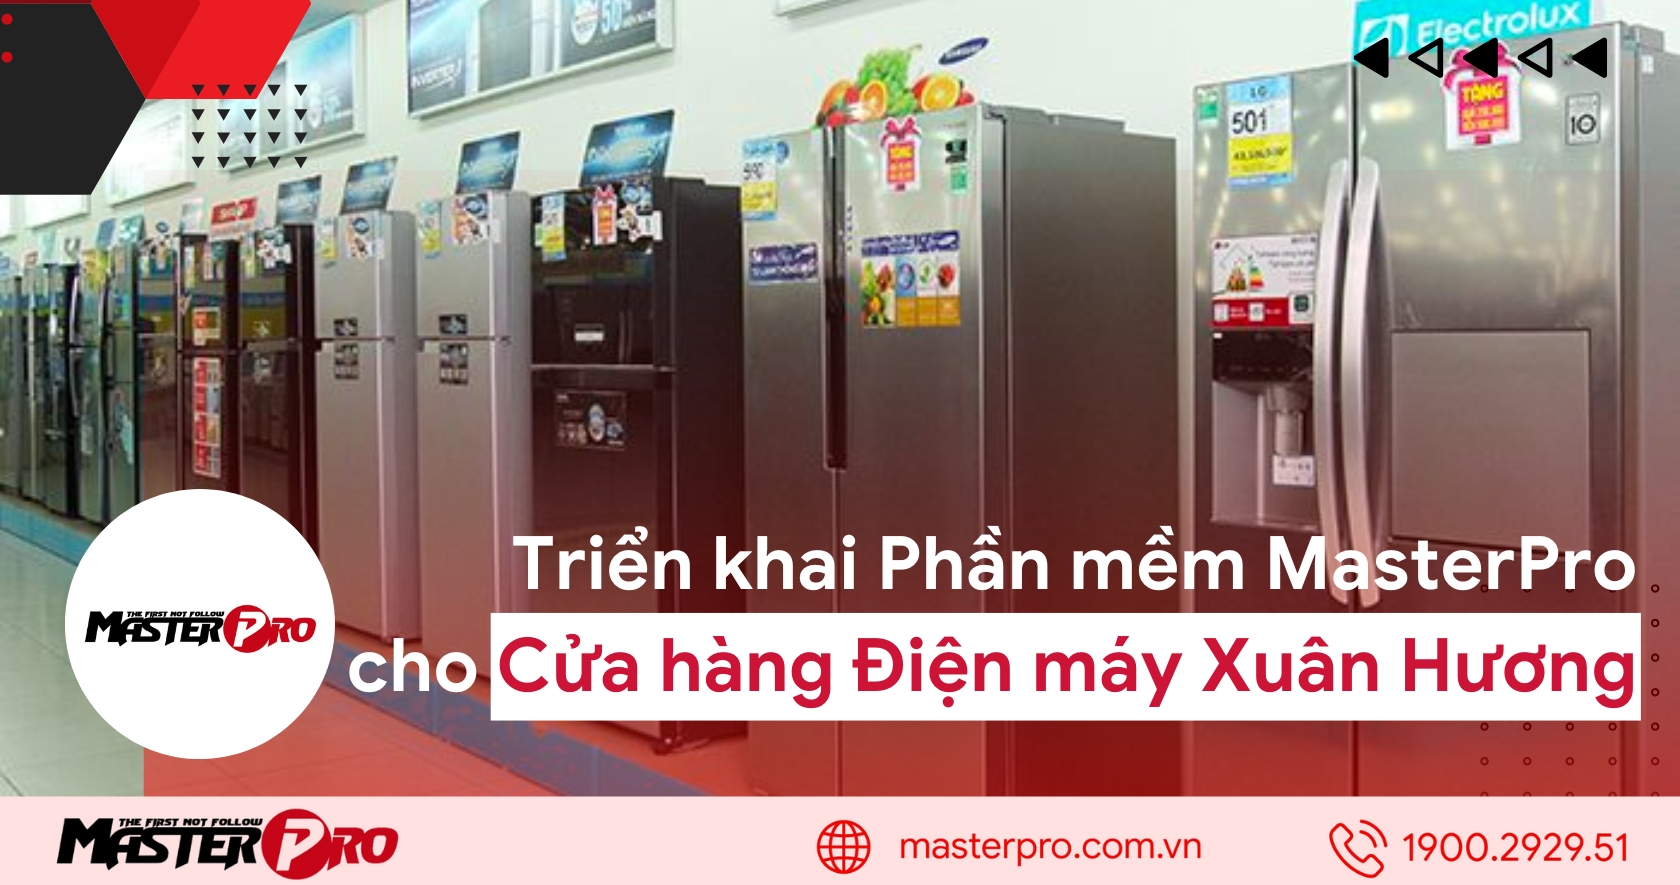 Triển khai phần mềm MasterPro cho Cửa hàng điện máy Xuân Hương